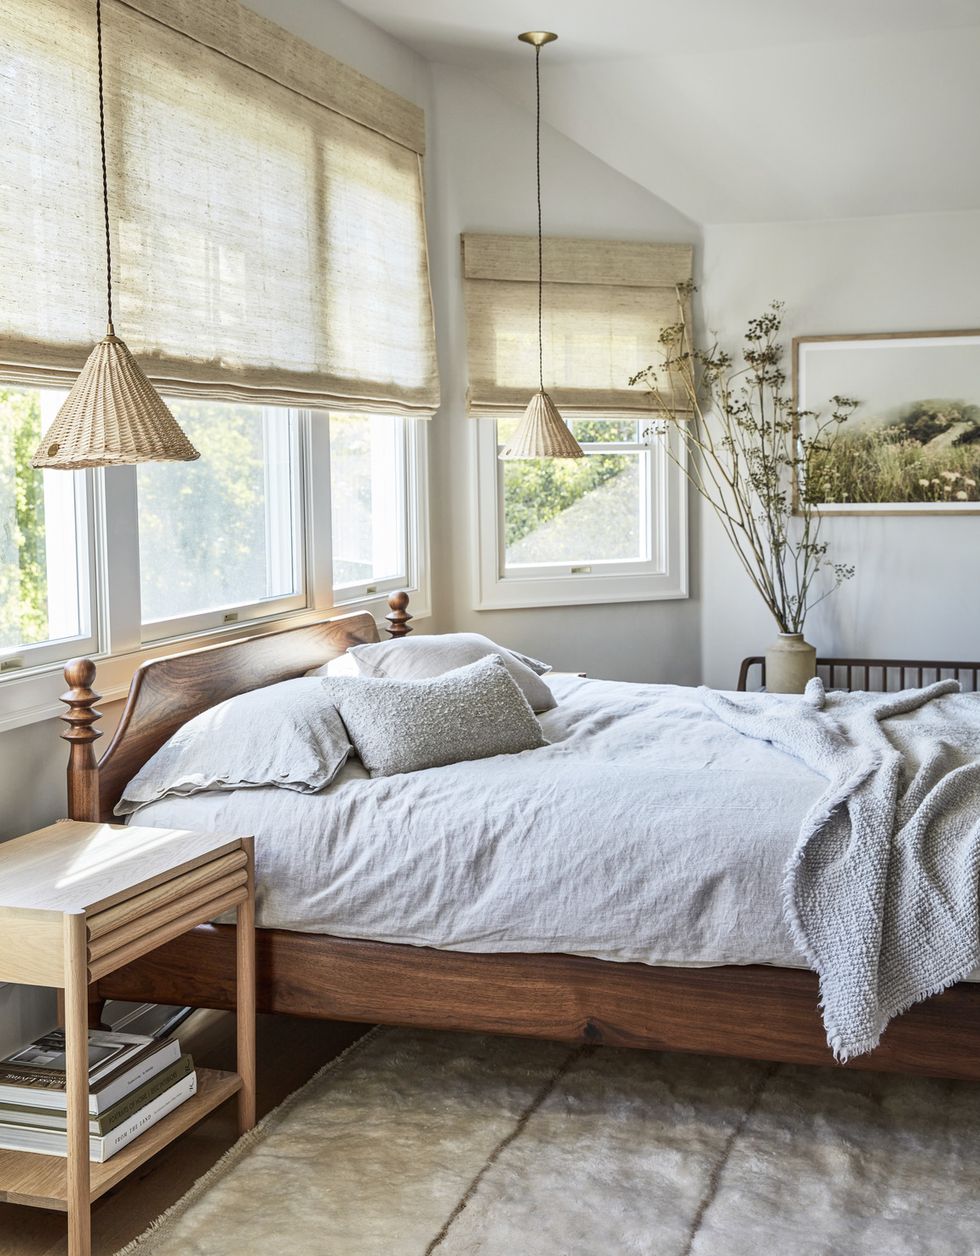 orinda, california home designed by lauren nelson design